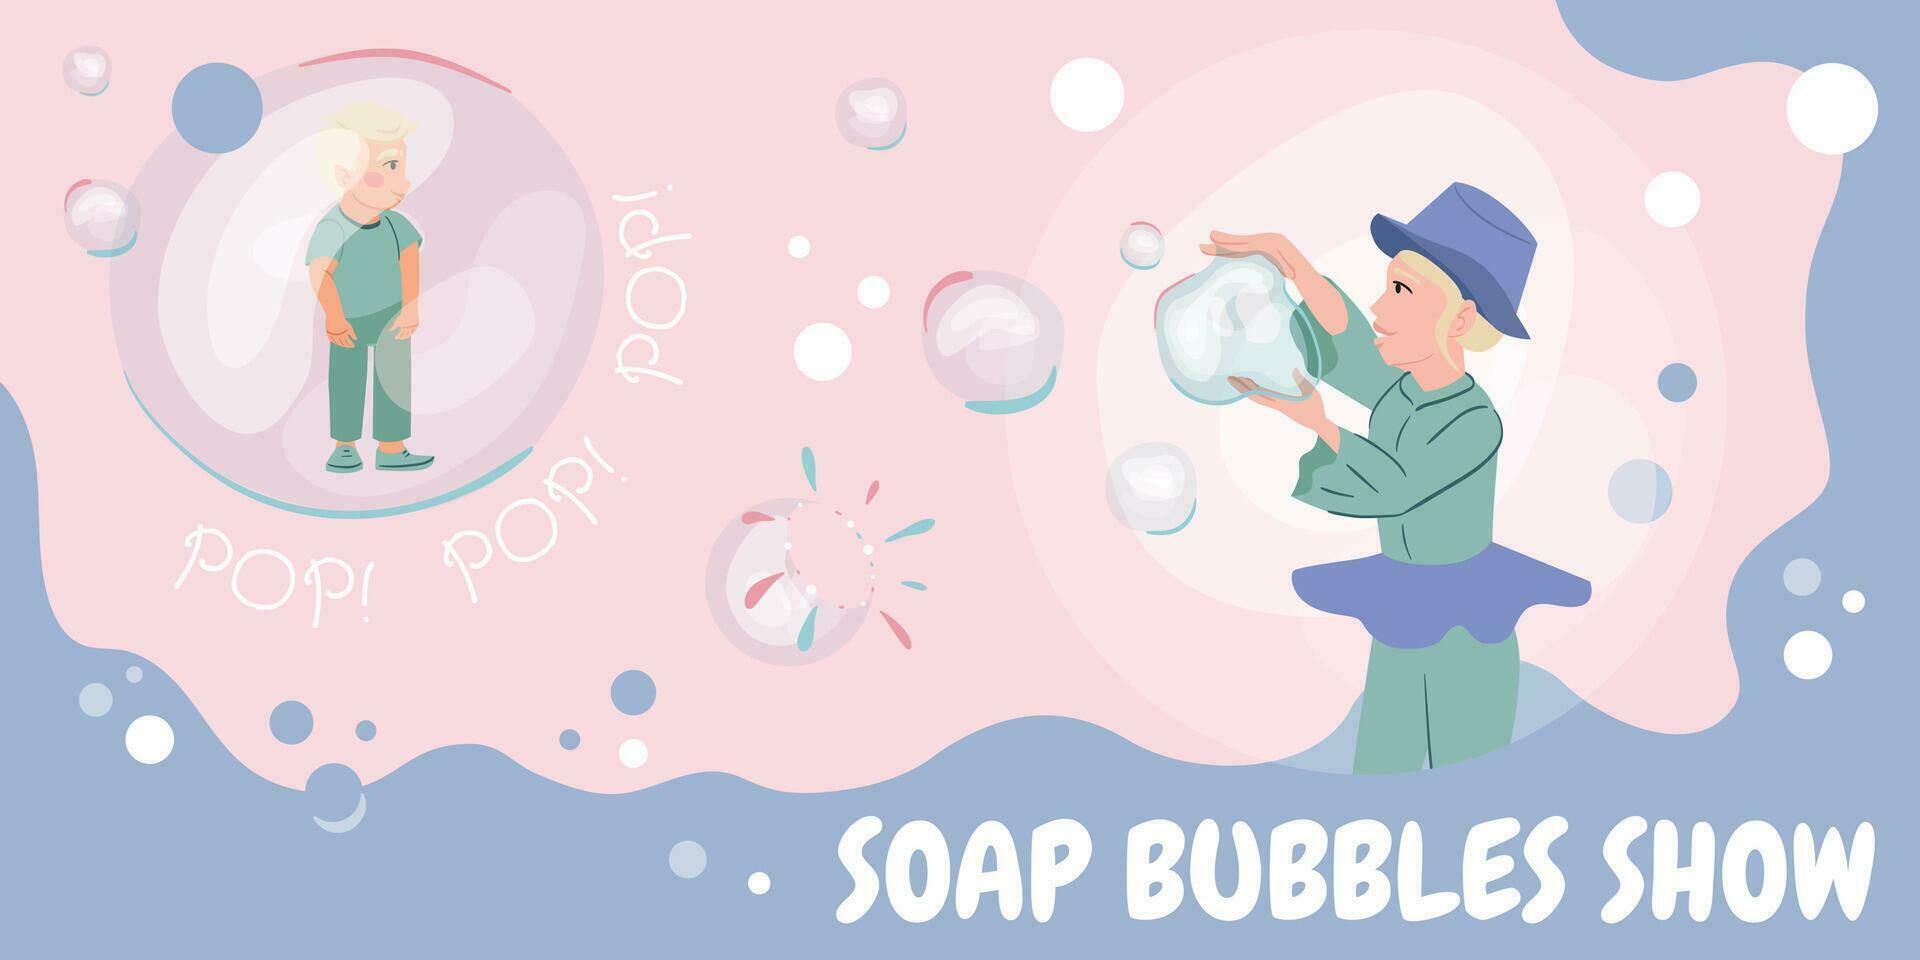 bubblor pop- visa collage vektor